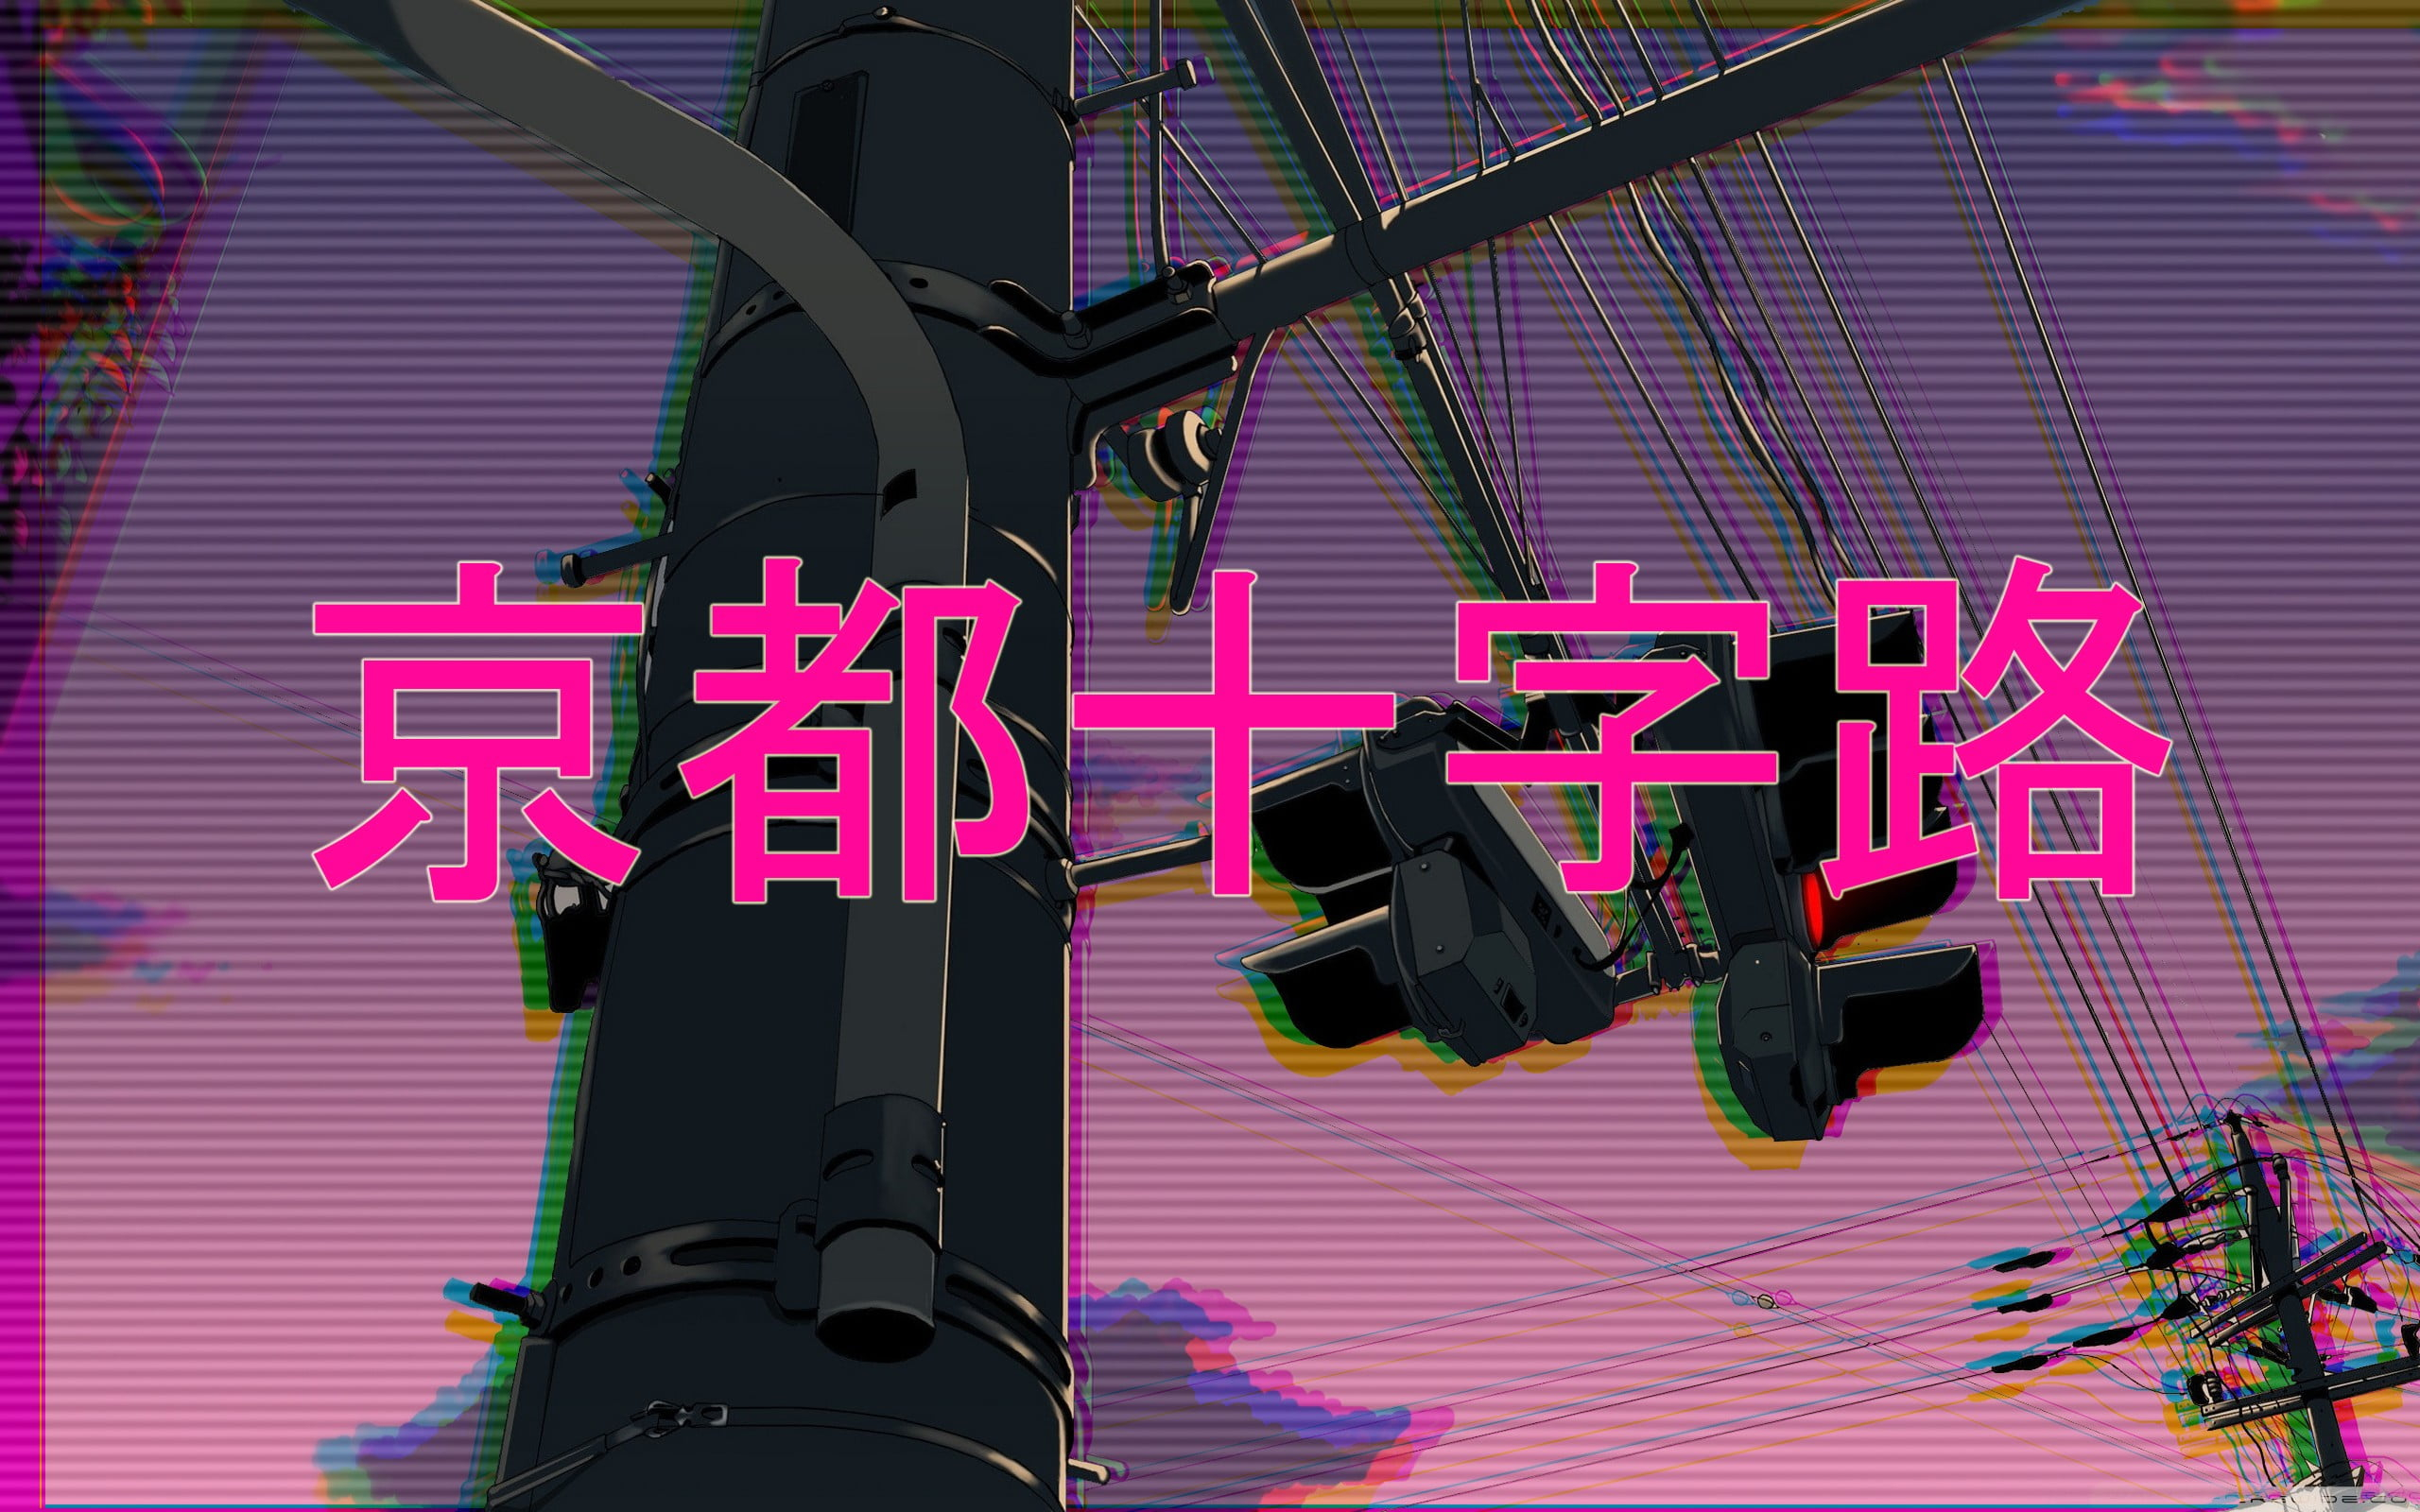 kanji text wallpaper vaporwave 1980s • Wallpaper For You